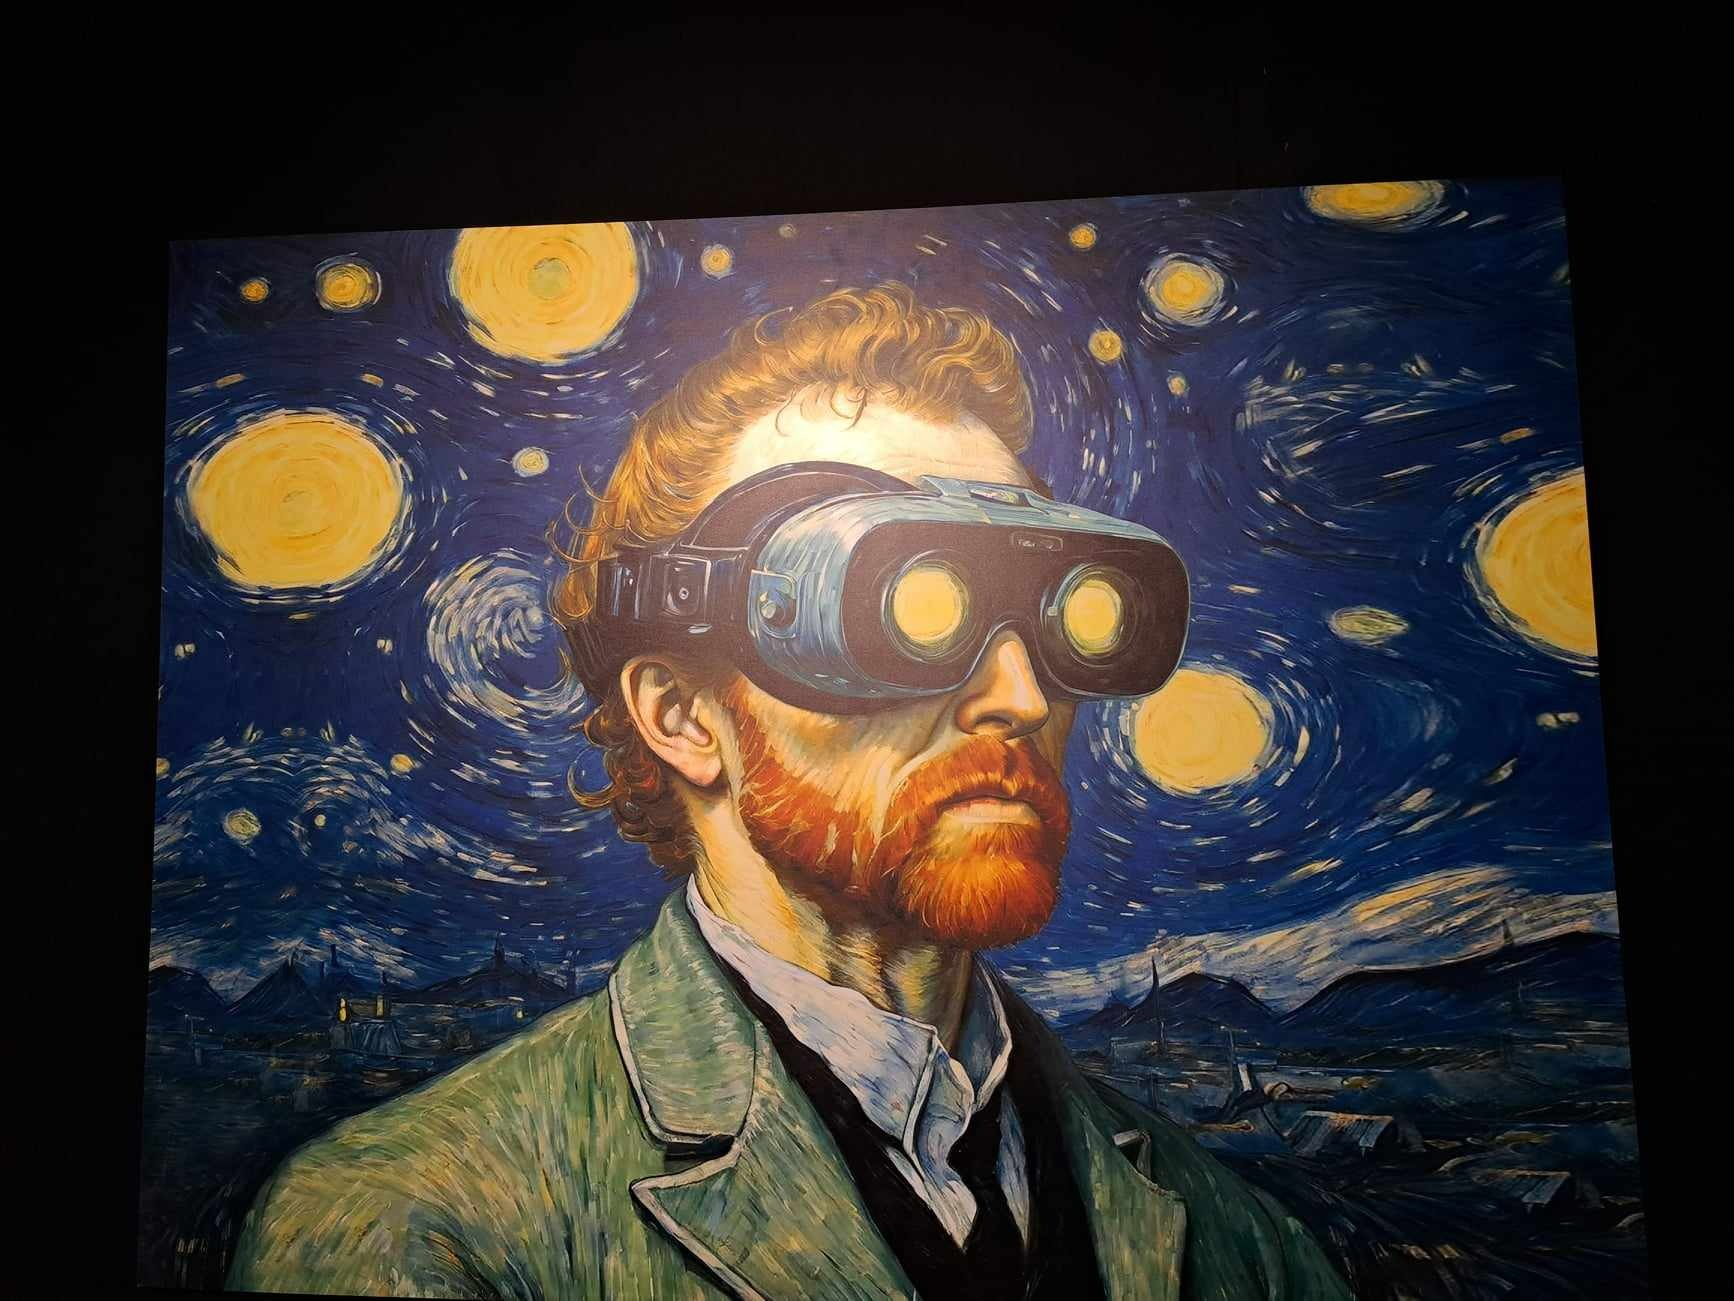 Van Gogh – Multi-Sensory Exhibition – KRAKÓW
23 kwietna klasa 1k odwiedziła Kraków by zobaczyć  multisensoryczną, niezwykle angażującą zmysły, wystawę największych dzieł VINCENTA VAN GOGHA.   Wielka sztuka została połączona z  nową technologią. W specjalnie zaaranżowanej przestrzeni ekspozycyjnej na ekranach o powierzchni ponad 2000 m2 można było zobaczyć setki dzieł i dosłownie zanurzyć się w świecie obrazów.
Wszystkie prace artysty wyświetlane były jako wielkoformatowe, tętniące kolorami płótna. Ściany wokół oraz podłoga przemiały się w pasjonującą opowieść o życiu i twórczości malarza. Niezwykłym dodatkiem do tej wystawy był obszar wirtualnej rzeczywistości (VR), który pozwolił zwiedzającym na fascynującą podróż, wnikając głęboko w najbardziej rozpoznawalne dzieła VAN GOGHA.
zródło "Co w Krakowie.pl"